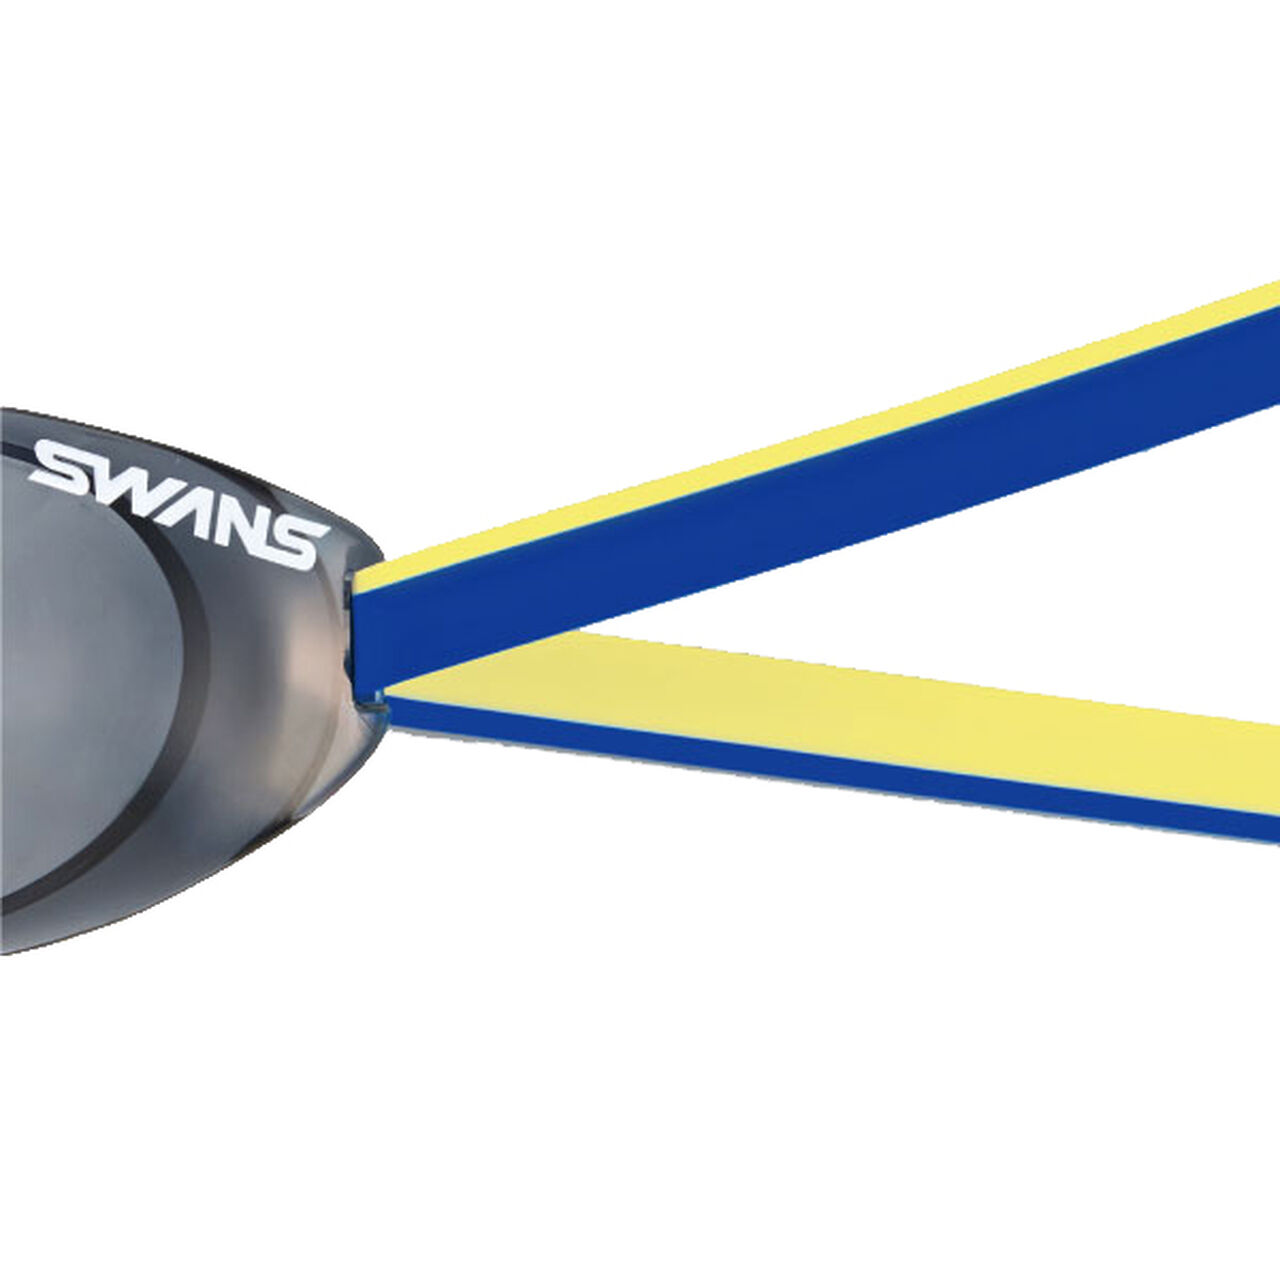 SWANS (速安视) SRB-40 BLY 蓝色/黄色 游泳镜备用带,Opt1, large image number 1